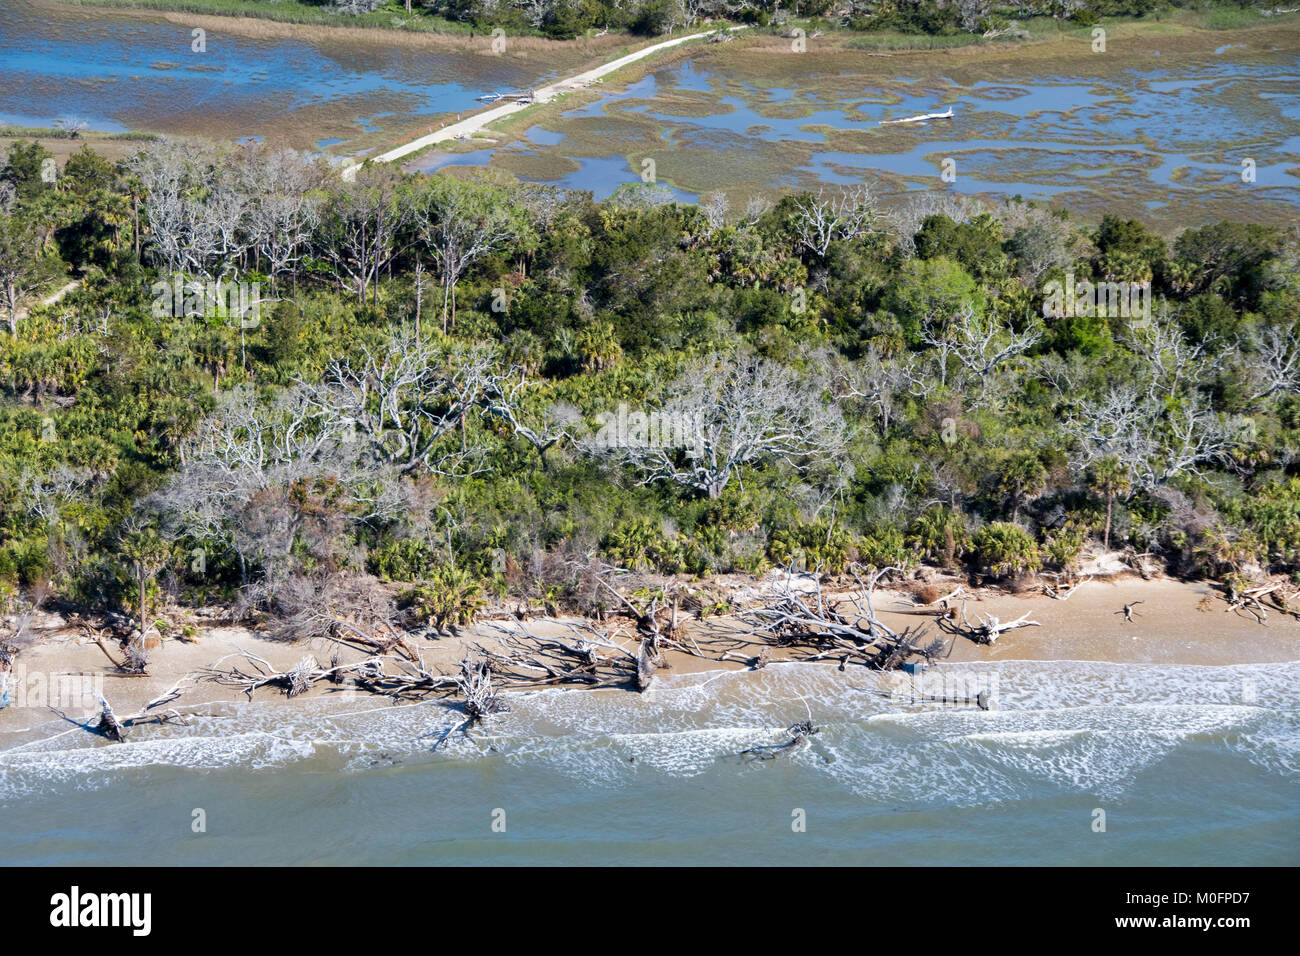 Erodiert Strand mit drift wood und gefallene Bäume übersät, South Carolina Stockfoto